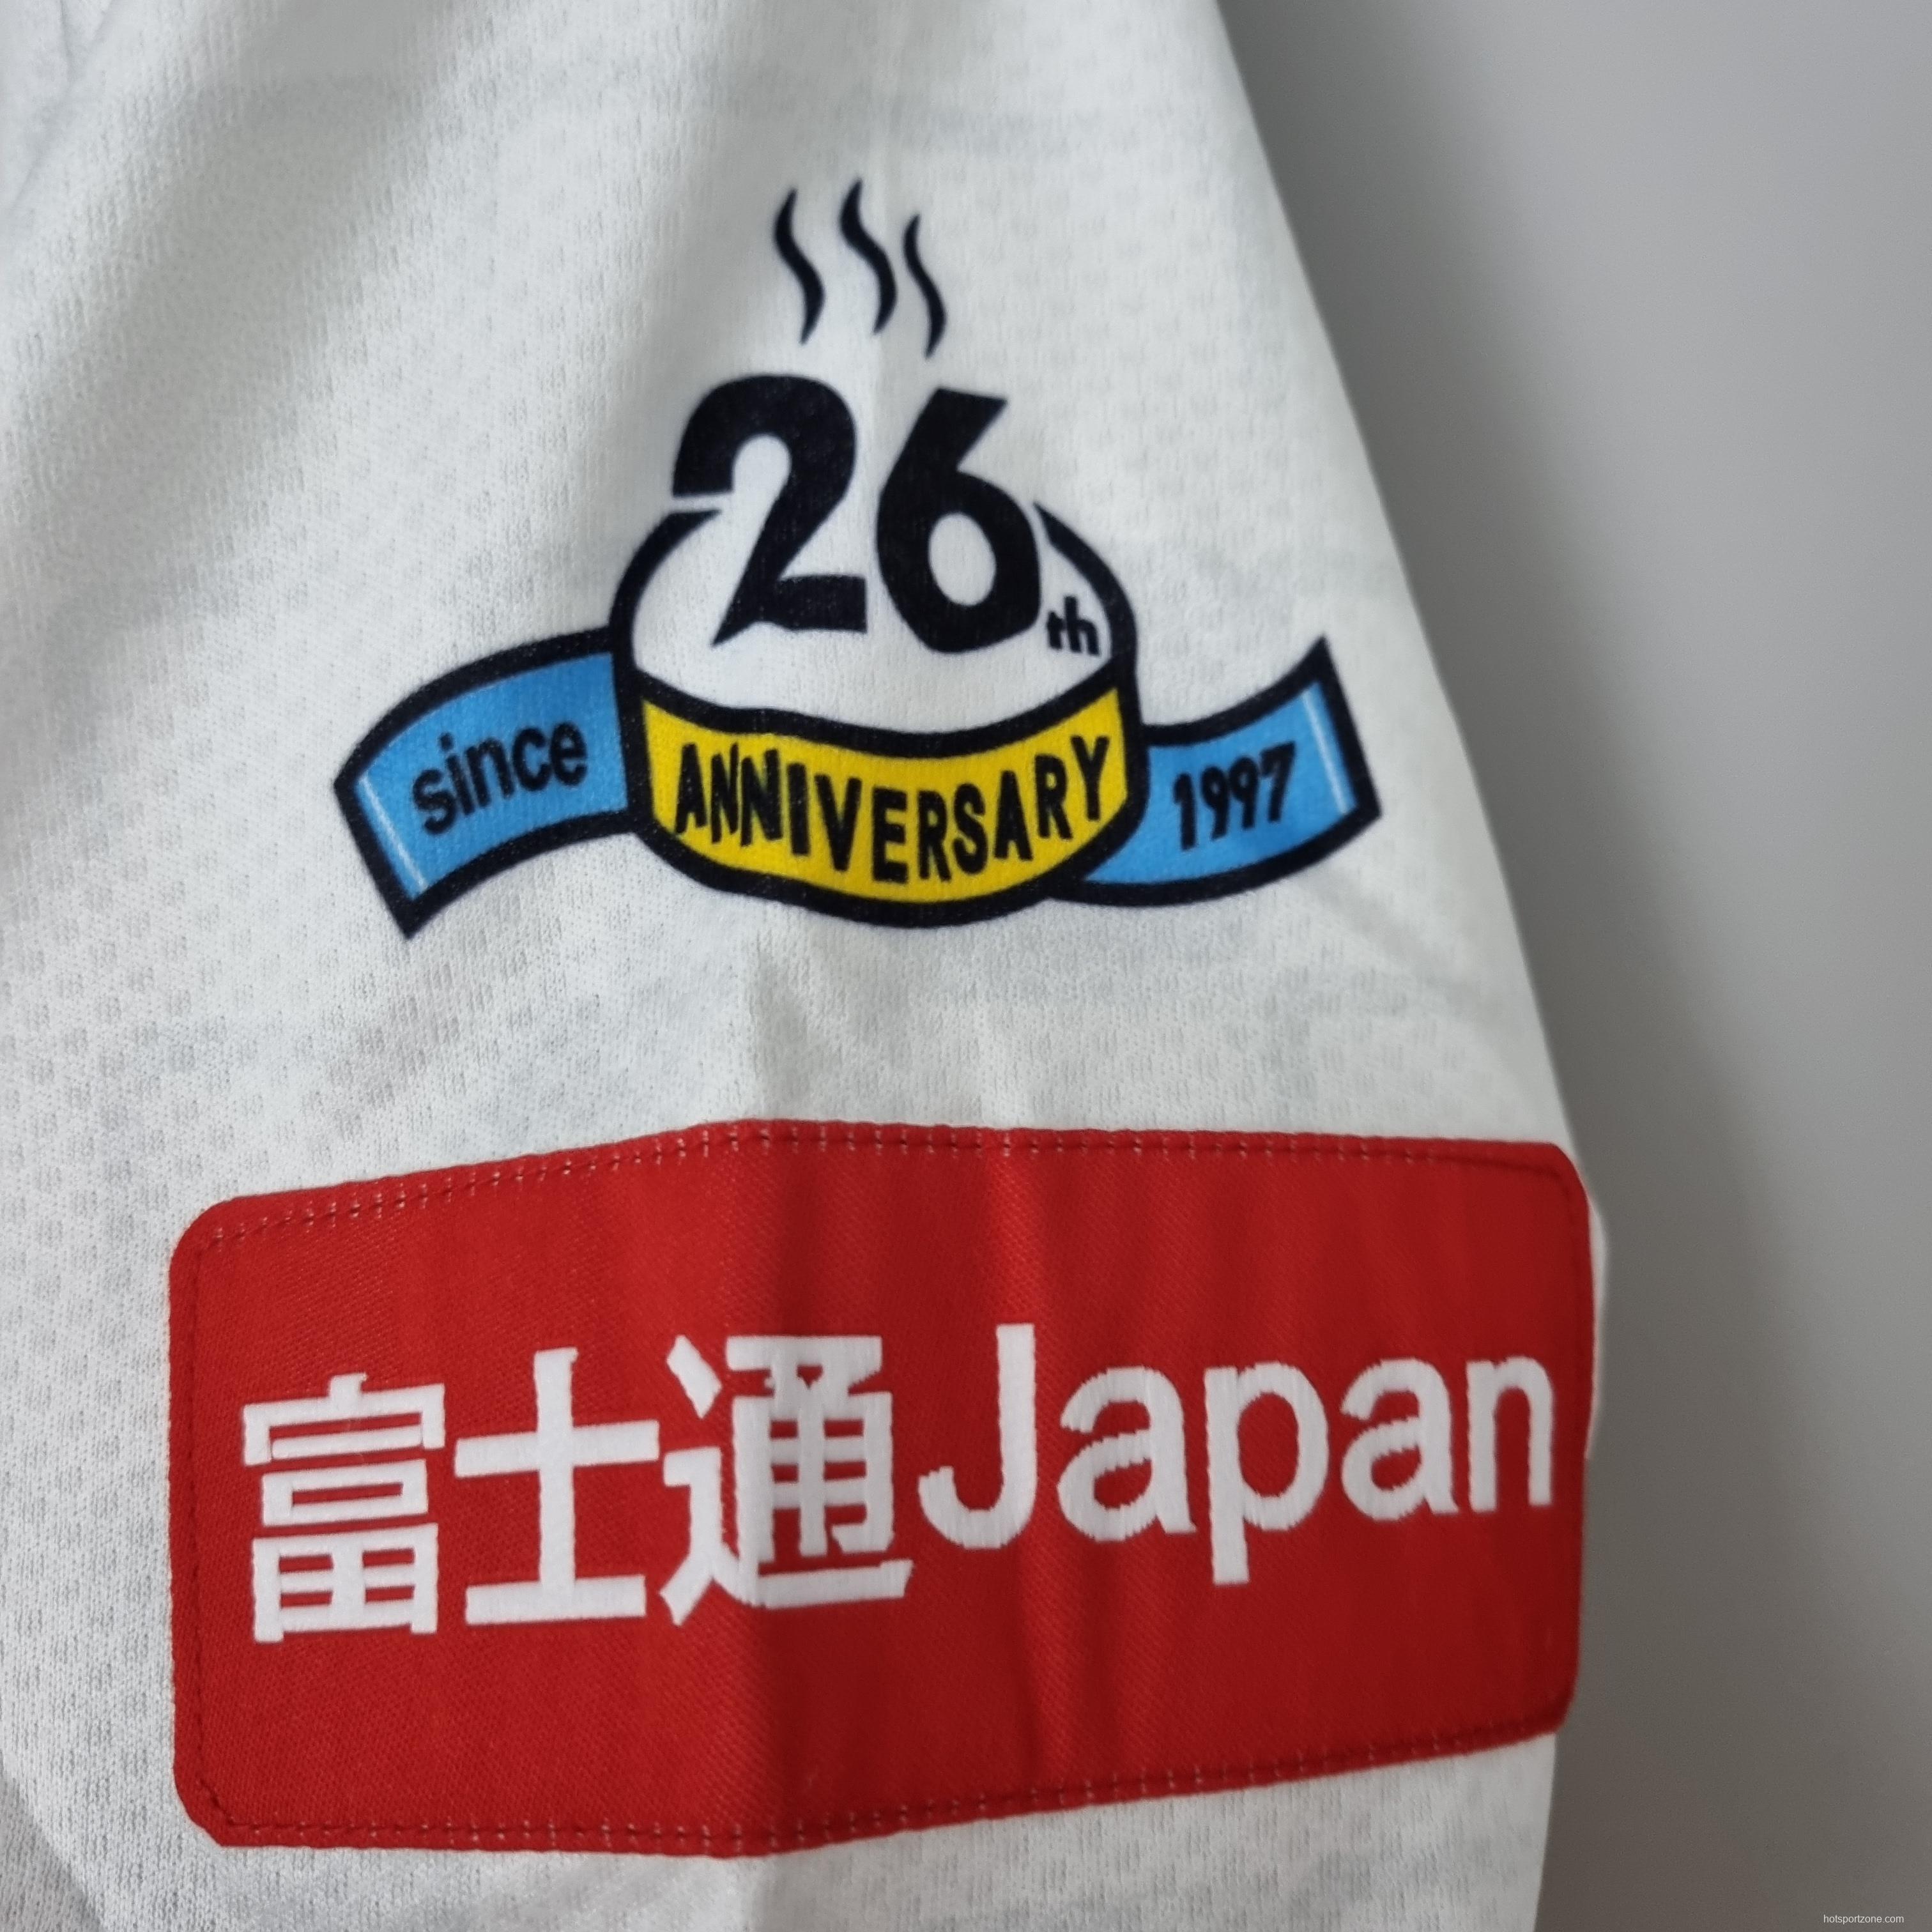 22/23 Kawasaki Frontale away Soccer Jersey